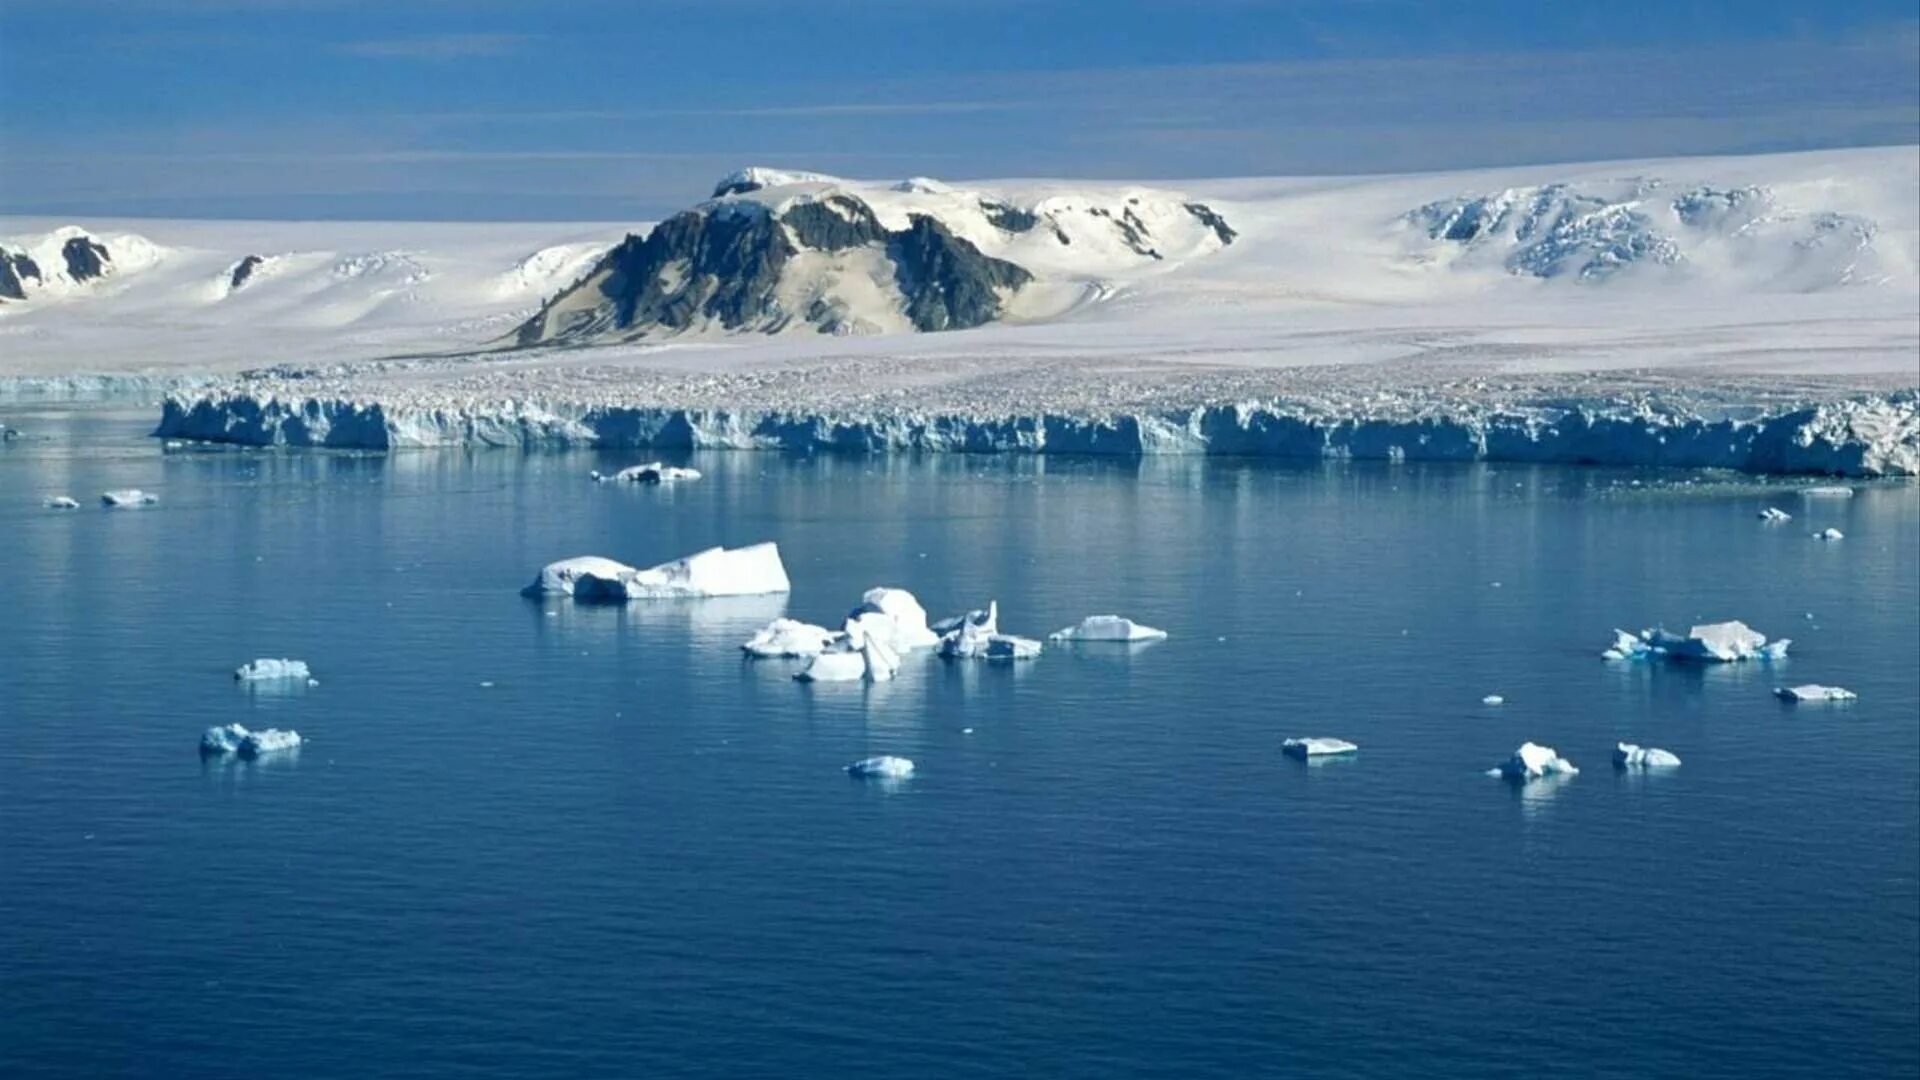 Река бассейна северного ледовитого океана северной америки. Антарктида Гренландия Арктика Северный Ледовитый океан. Северный Ледовитый океан Южный полюс. Северный полюс Арктика. Северный Ледовитый океан и Антарктида.